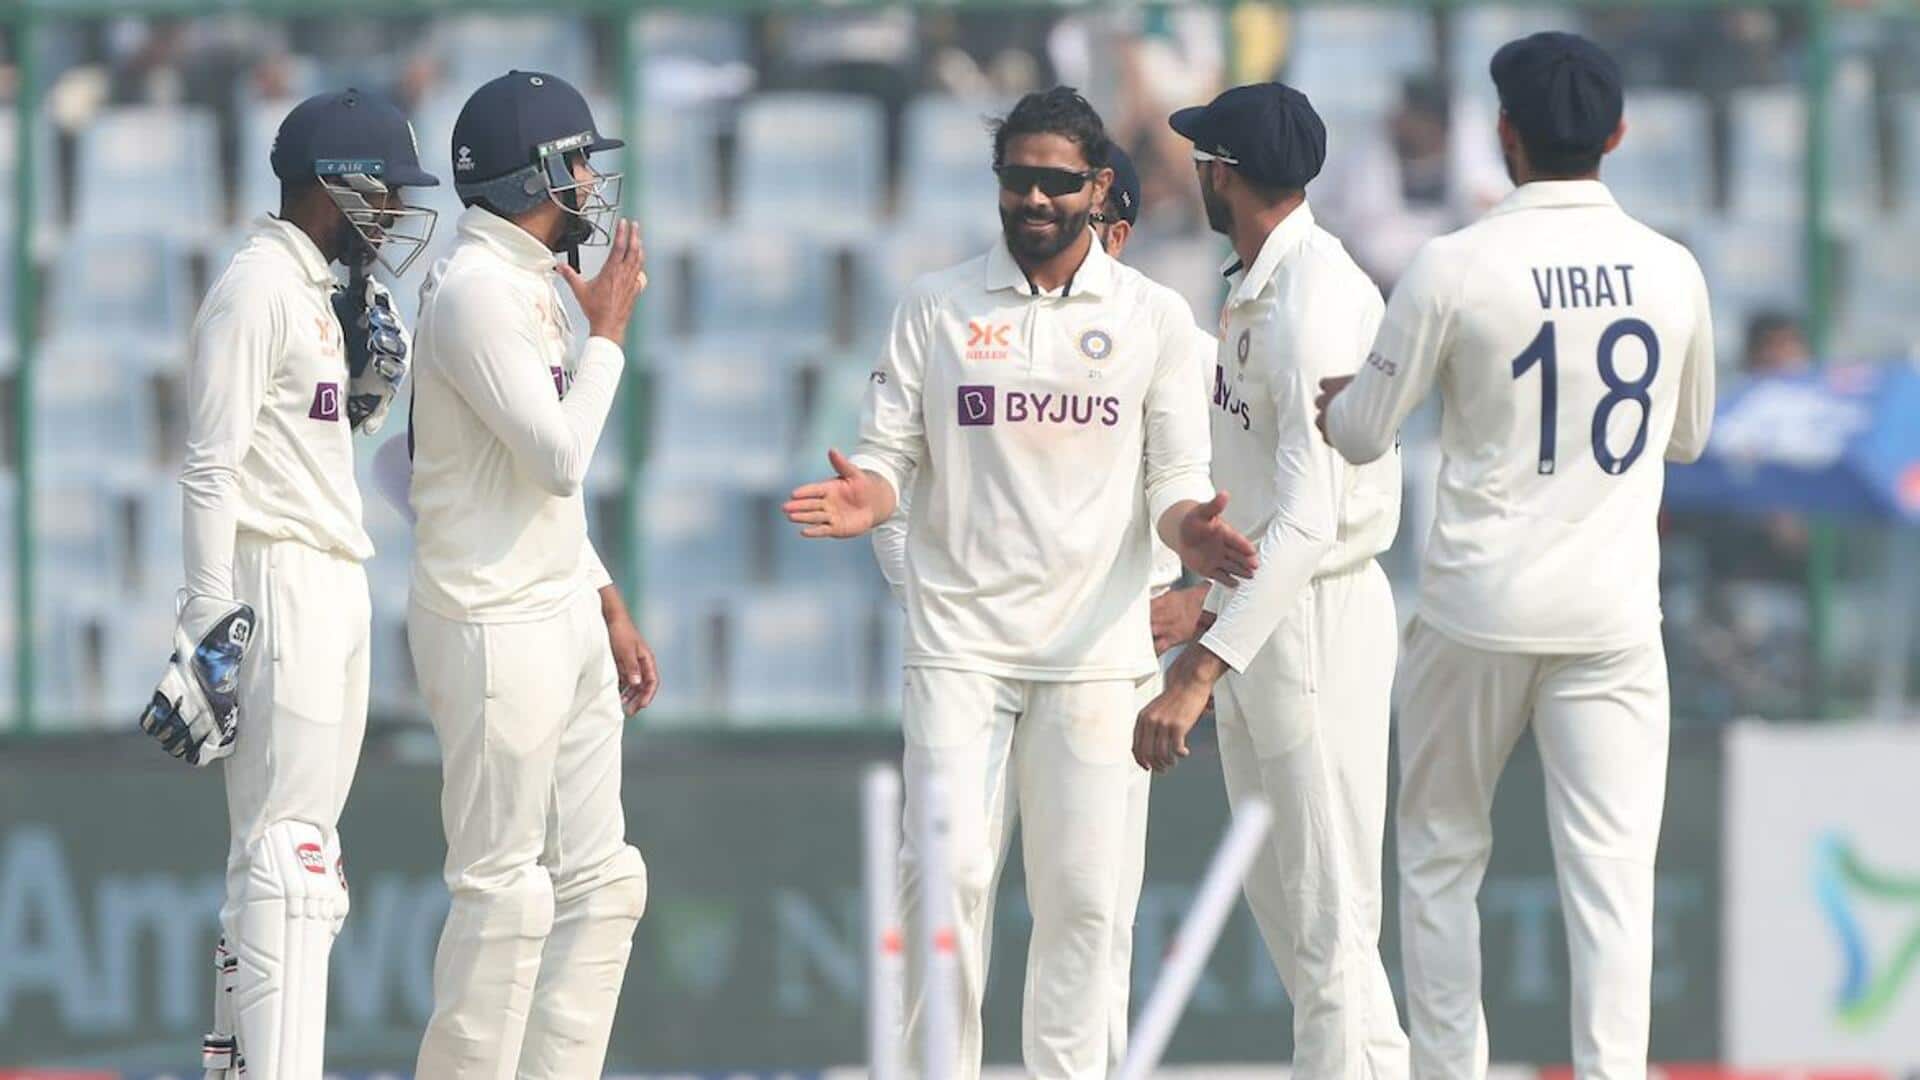 बॉर्डर-गावस्कर ट्रॉफी: ICC मैच रैफरी ने नागपुर और दिल्ली की पिच को दी 'औसत' रेटिंग 